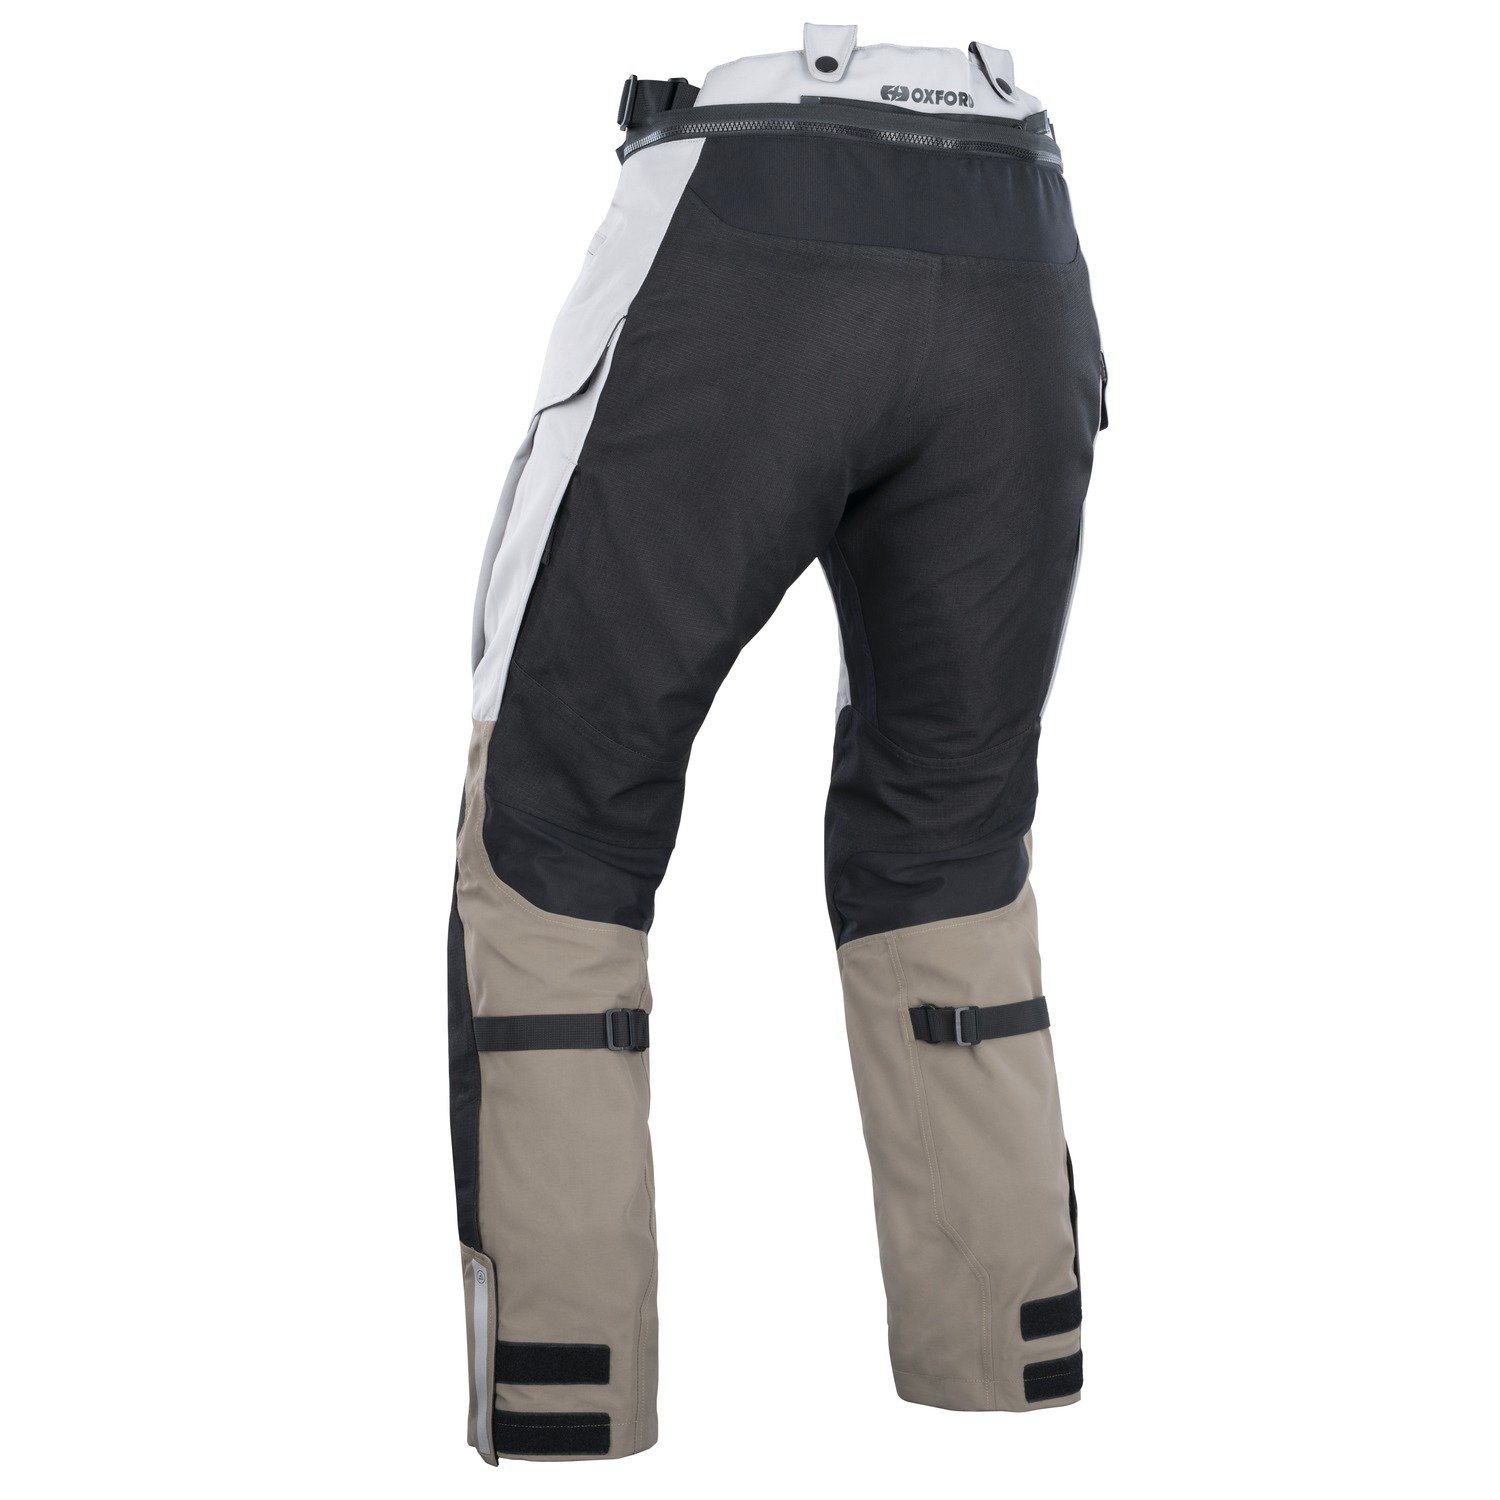 Obrázek produktu kalhoty STORMLAND DRY2DRY™, OXFORD ADVANCED (pískové/černé/oranžové)